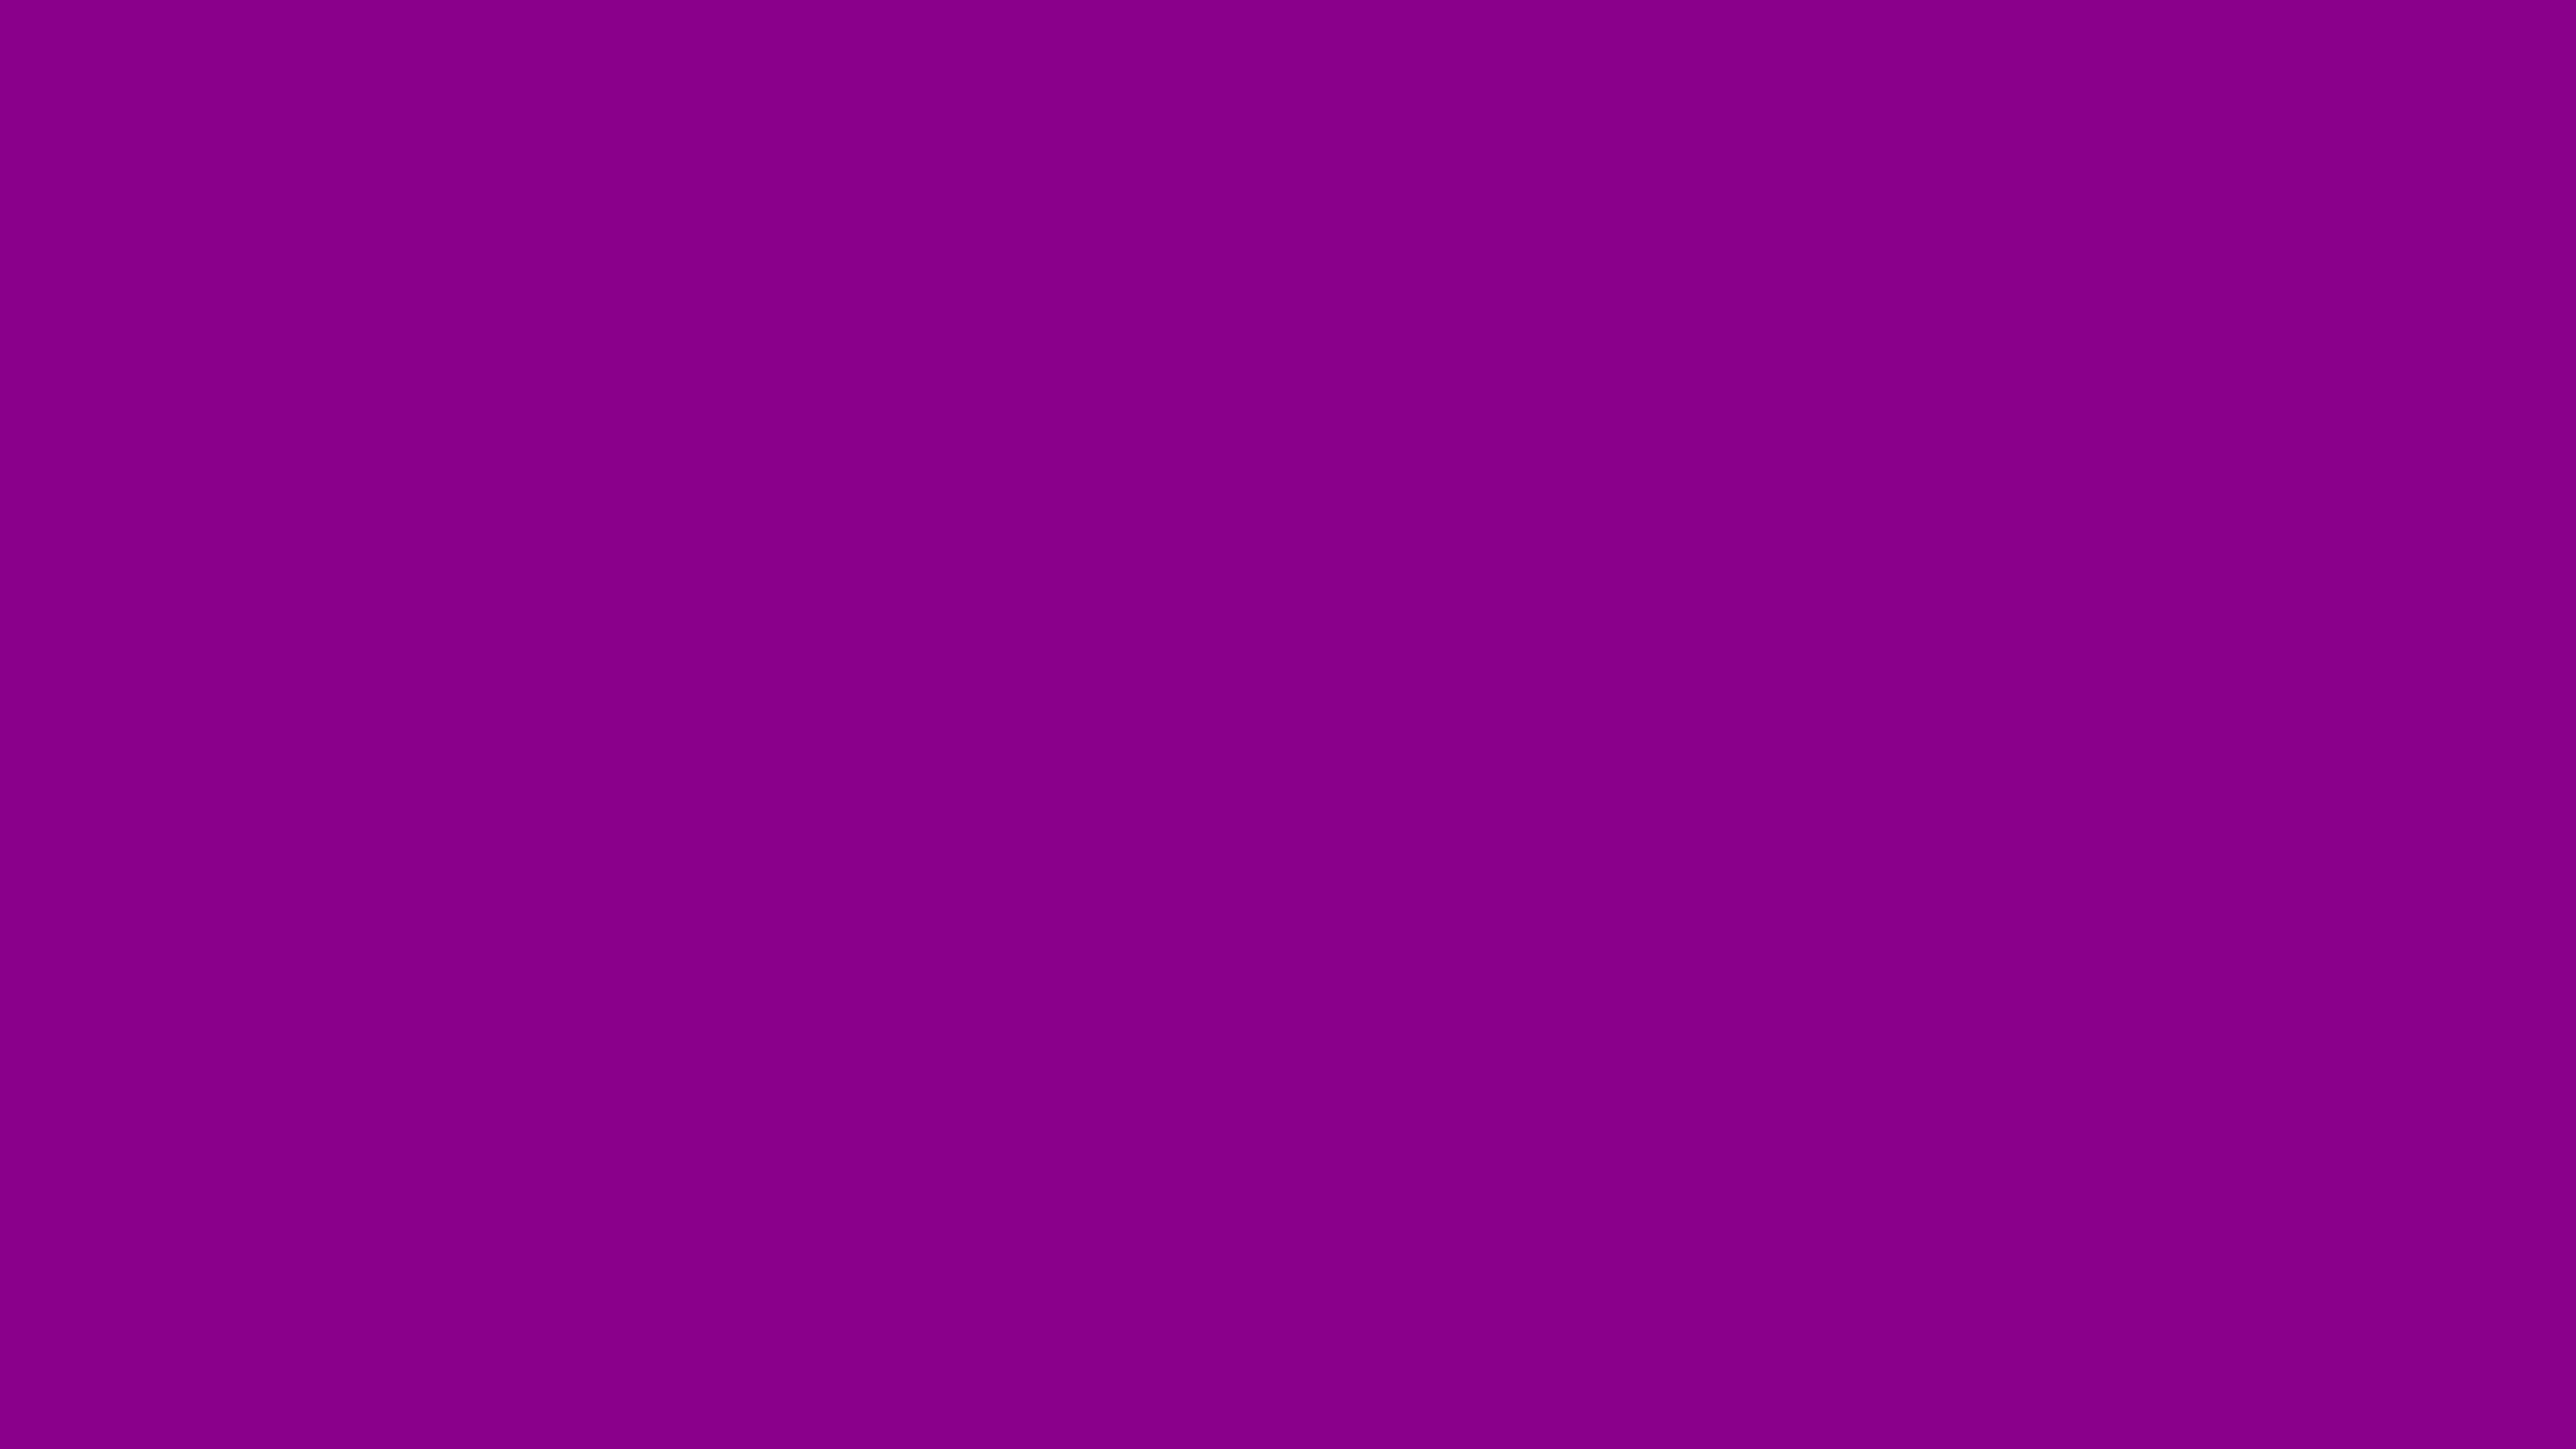 4096x2304 Dark Magenta Solid Color Background